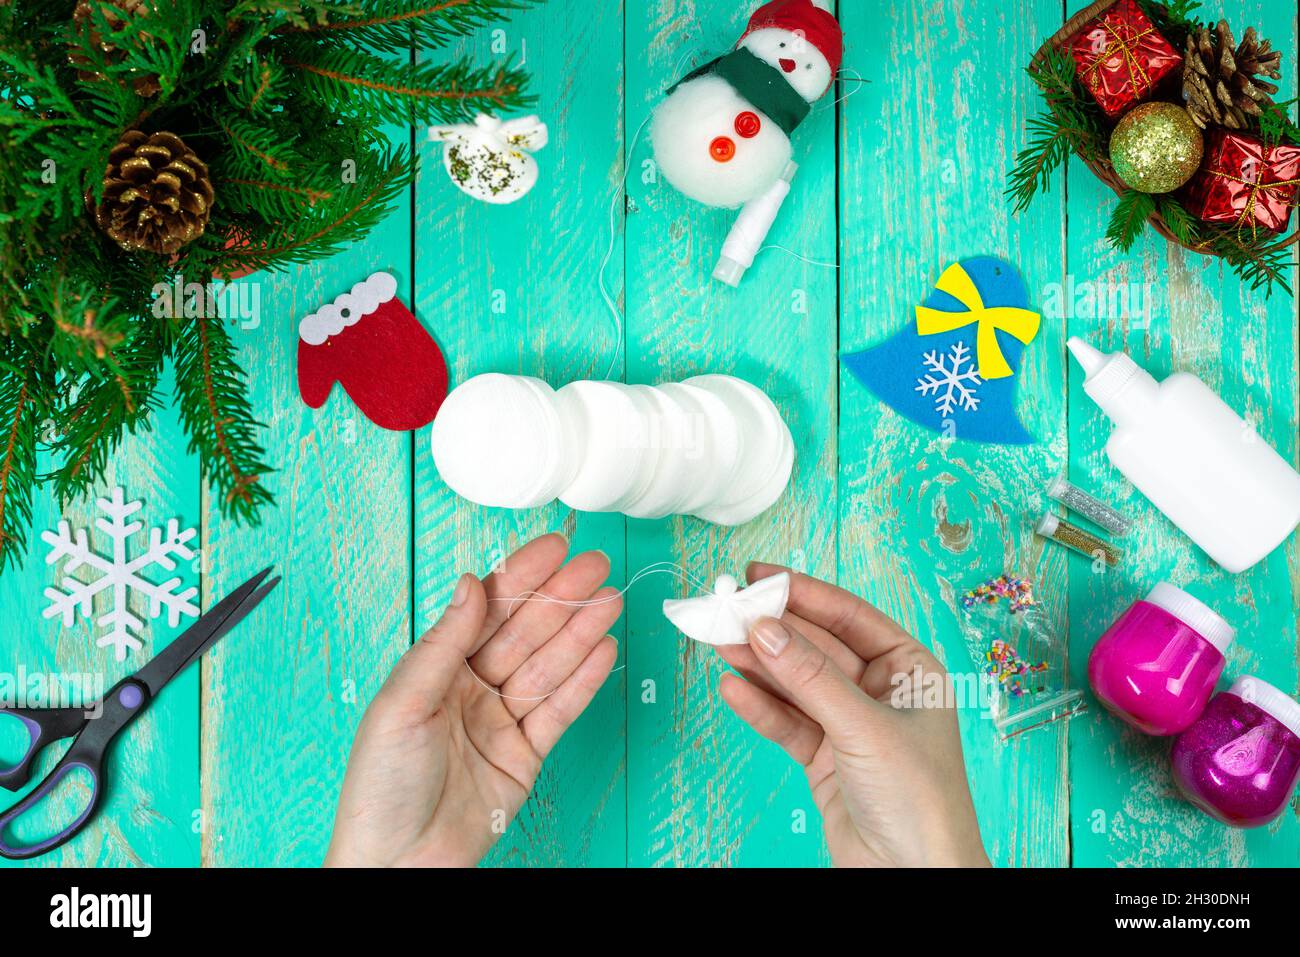 Erstellen Kind Weihnachten Geschenk Spielzeug kleiner Engel in  Weihnachtsbaum Dekorationen. Schere, Wattepads, Nähen auf einem Holztisch.  Kinderkunstprojekt, n Stockfotografie - Alamy